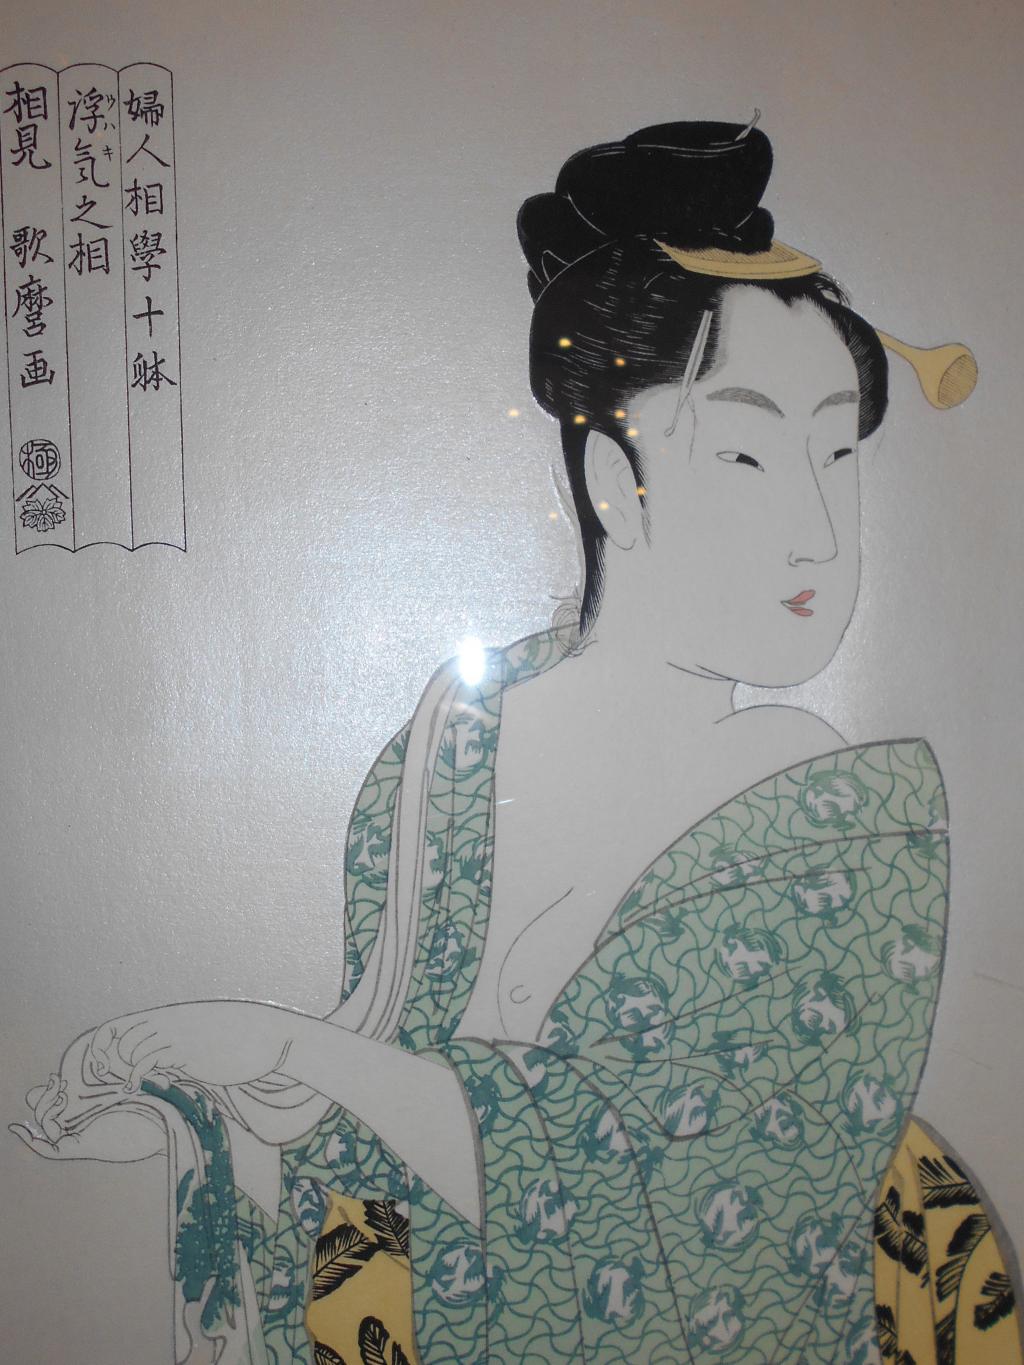 喜多川歌麿の美人画 EDO ART EXPO 美しき浮世絵の女性たち  芸術の秋